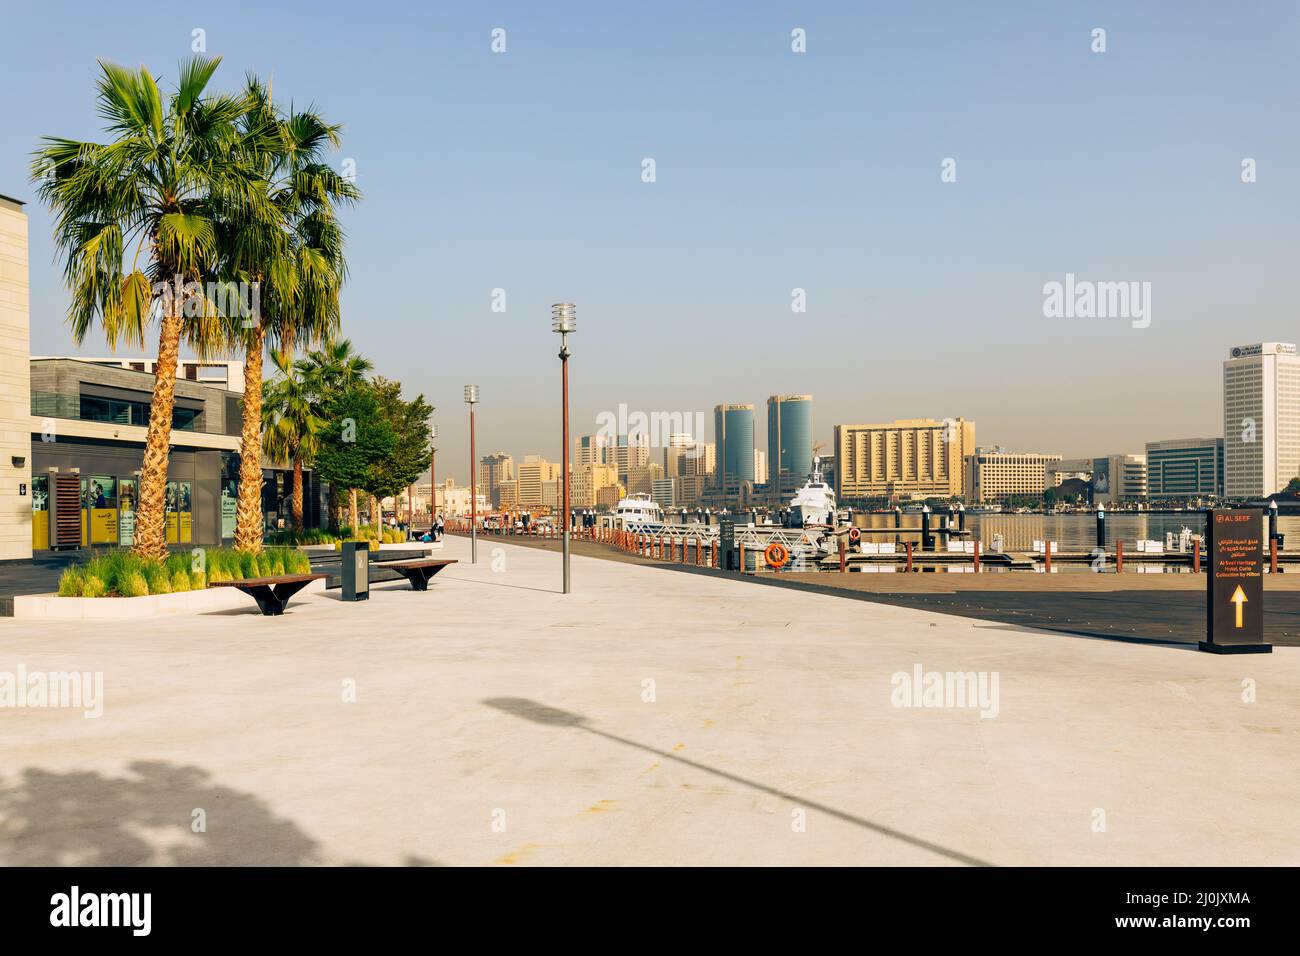 Partie moderne de Bay Creek, Dubaï Deira vieille ville. Émirats arabes Unis. Moyen-Orient. Banque D'Images